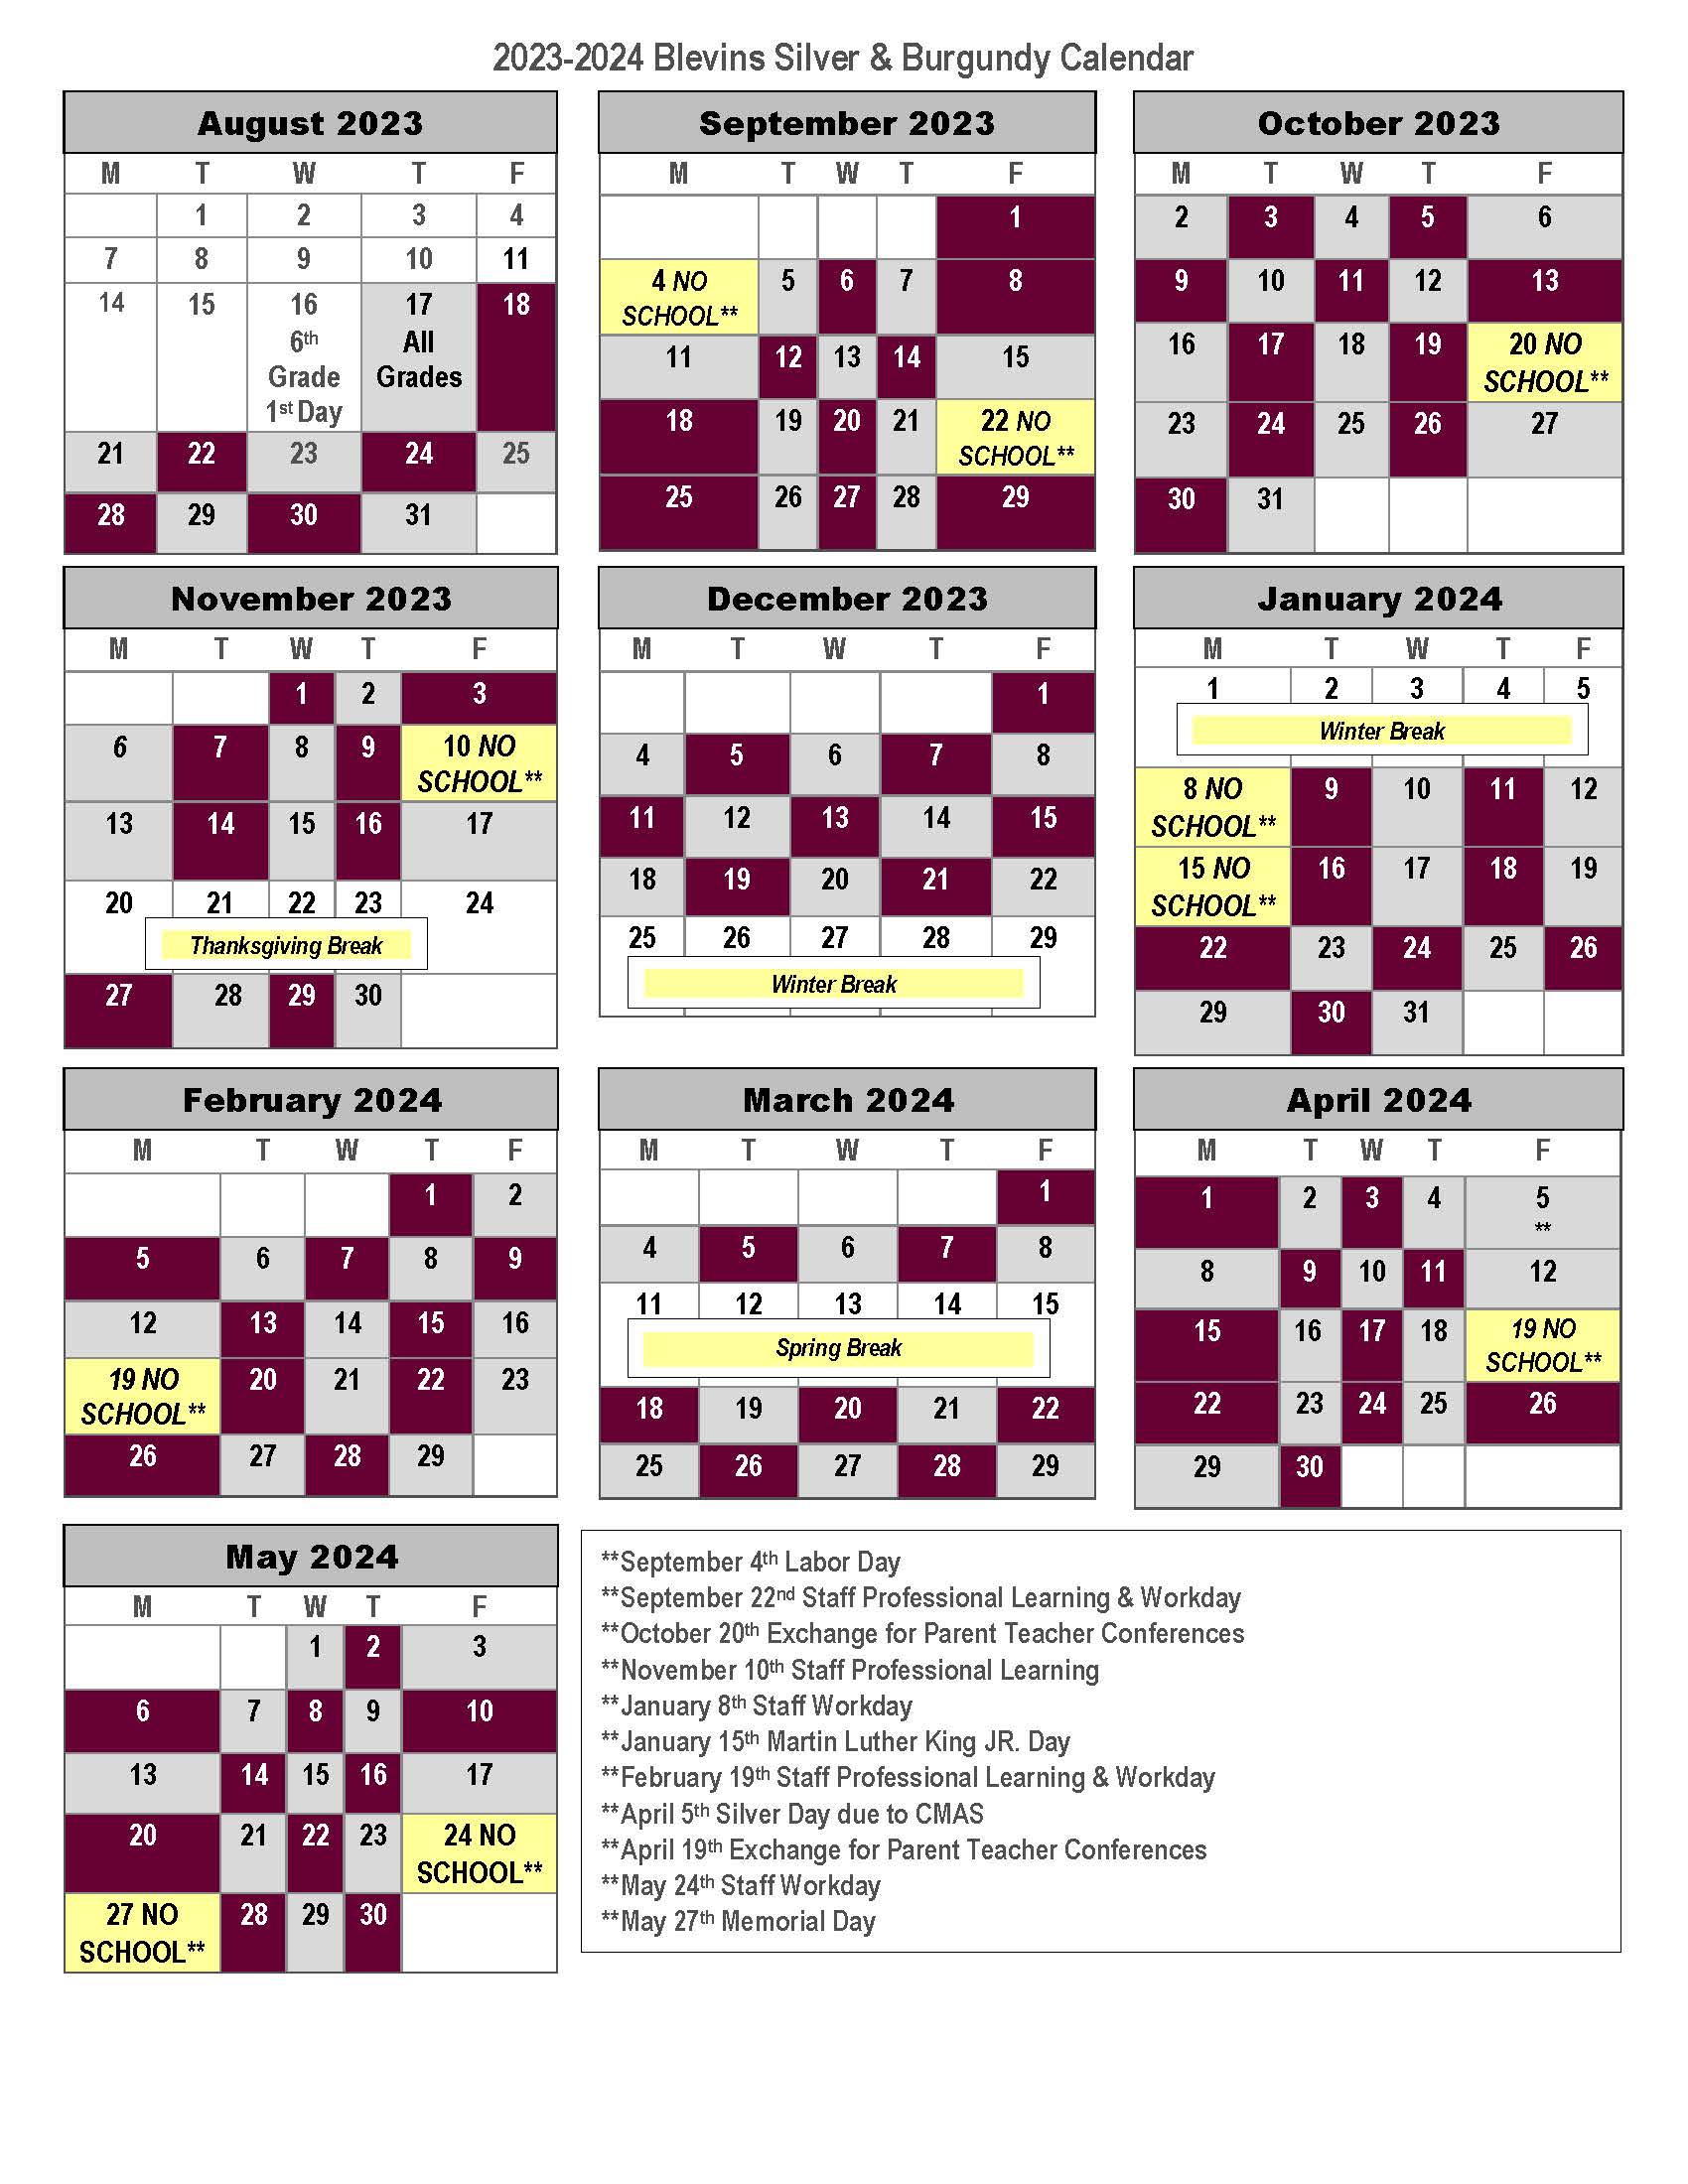 2023-2024 Silver & Burgundy Schedule